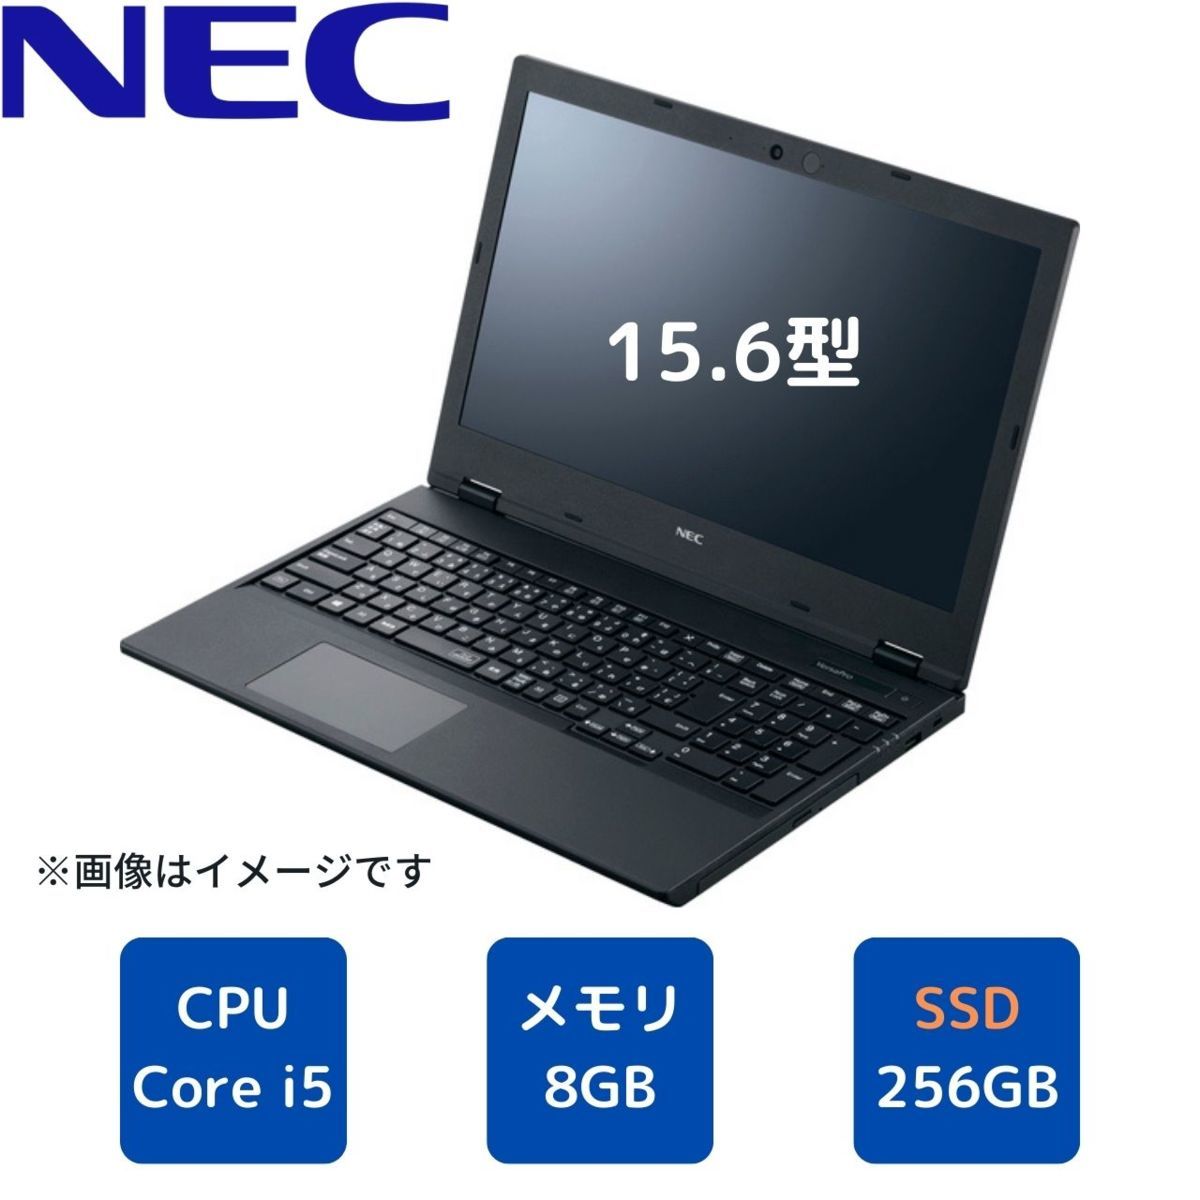 日本産 美品 NEC VersaPro VX-7 Core i5 2021年モデル nakedinjamaica.com